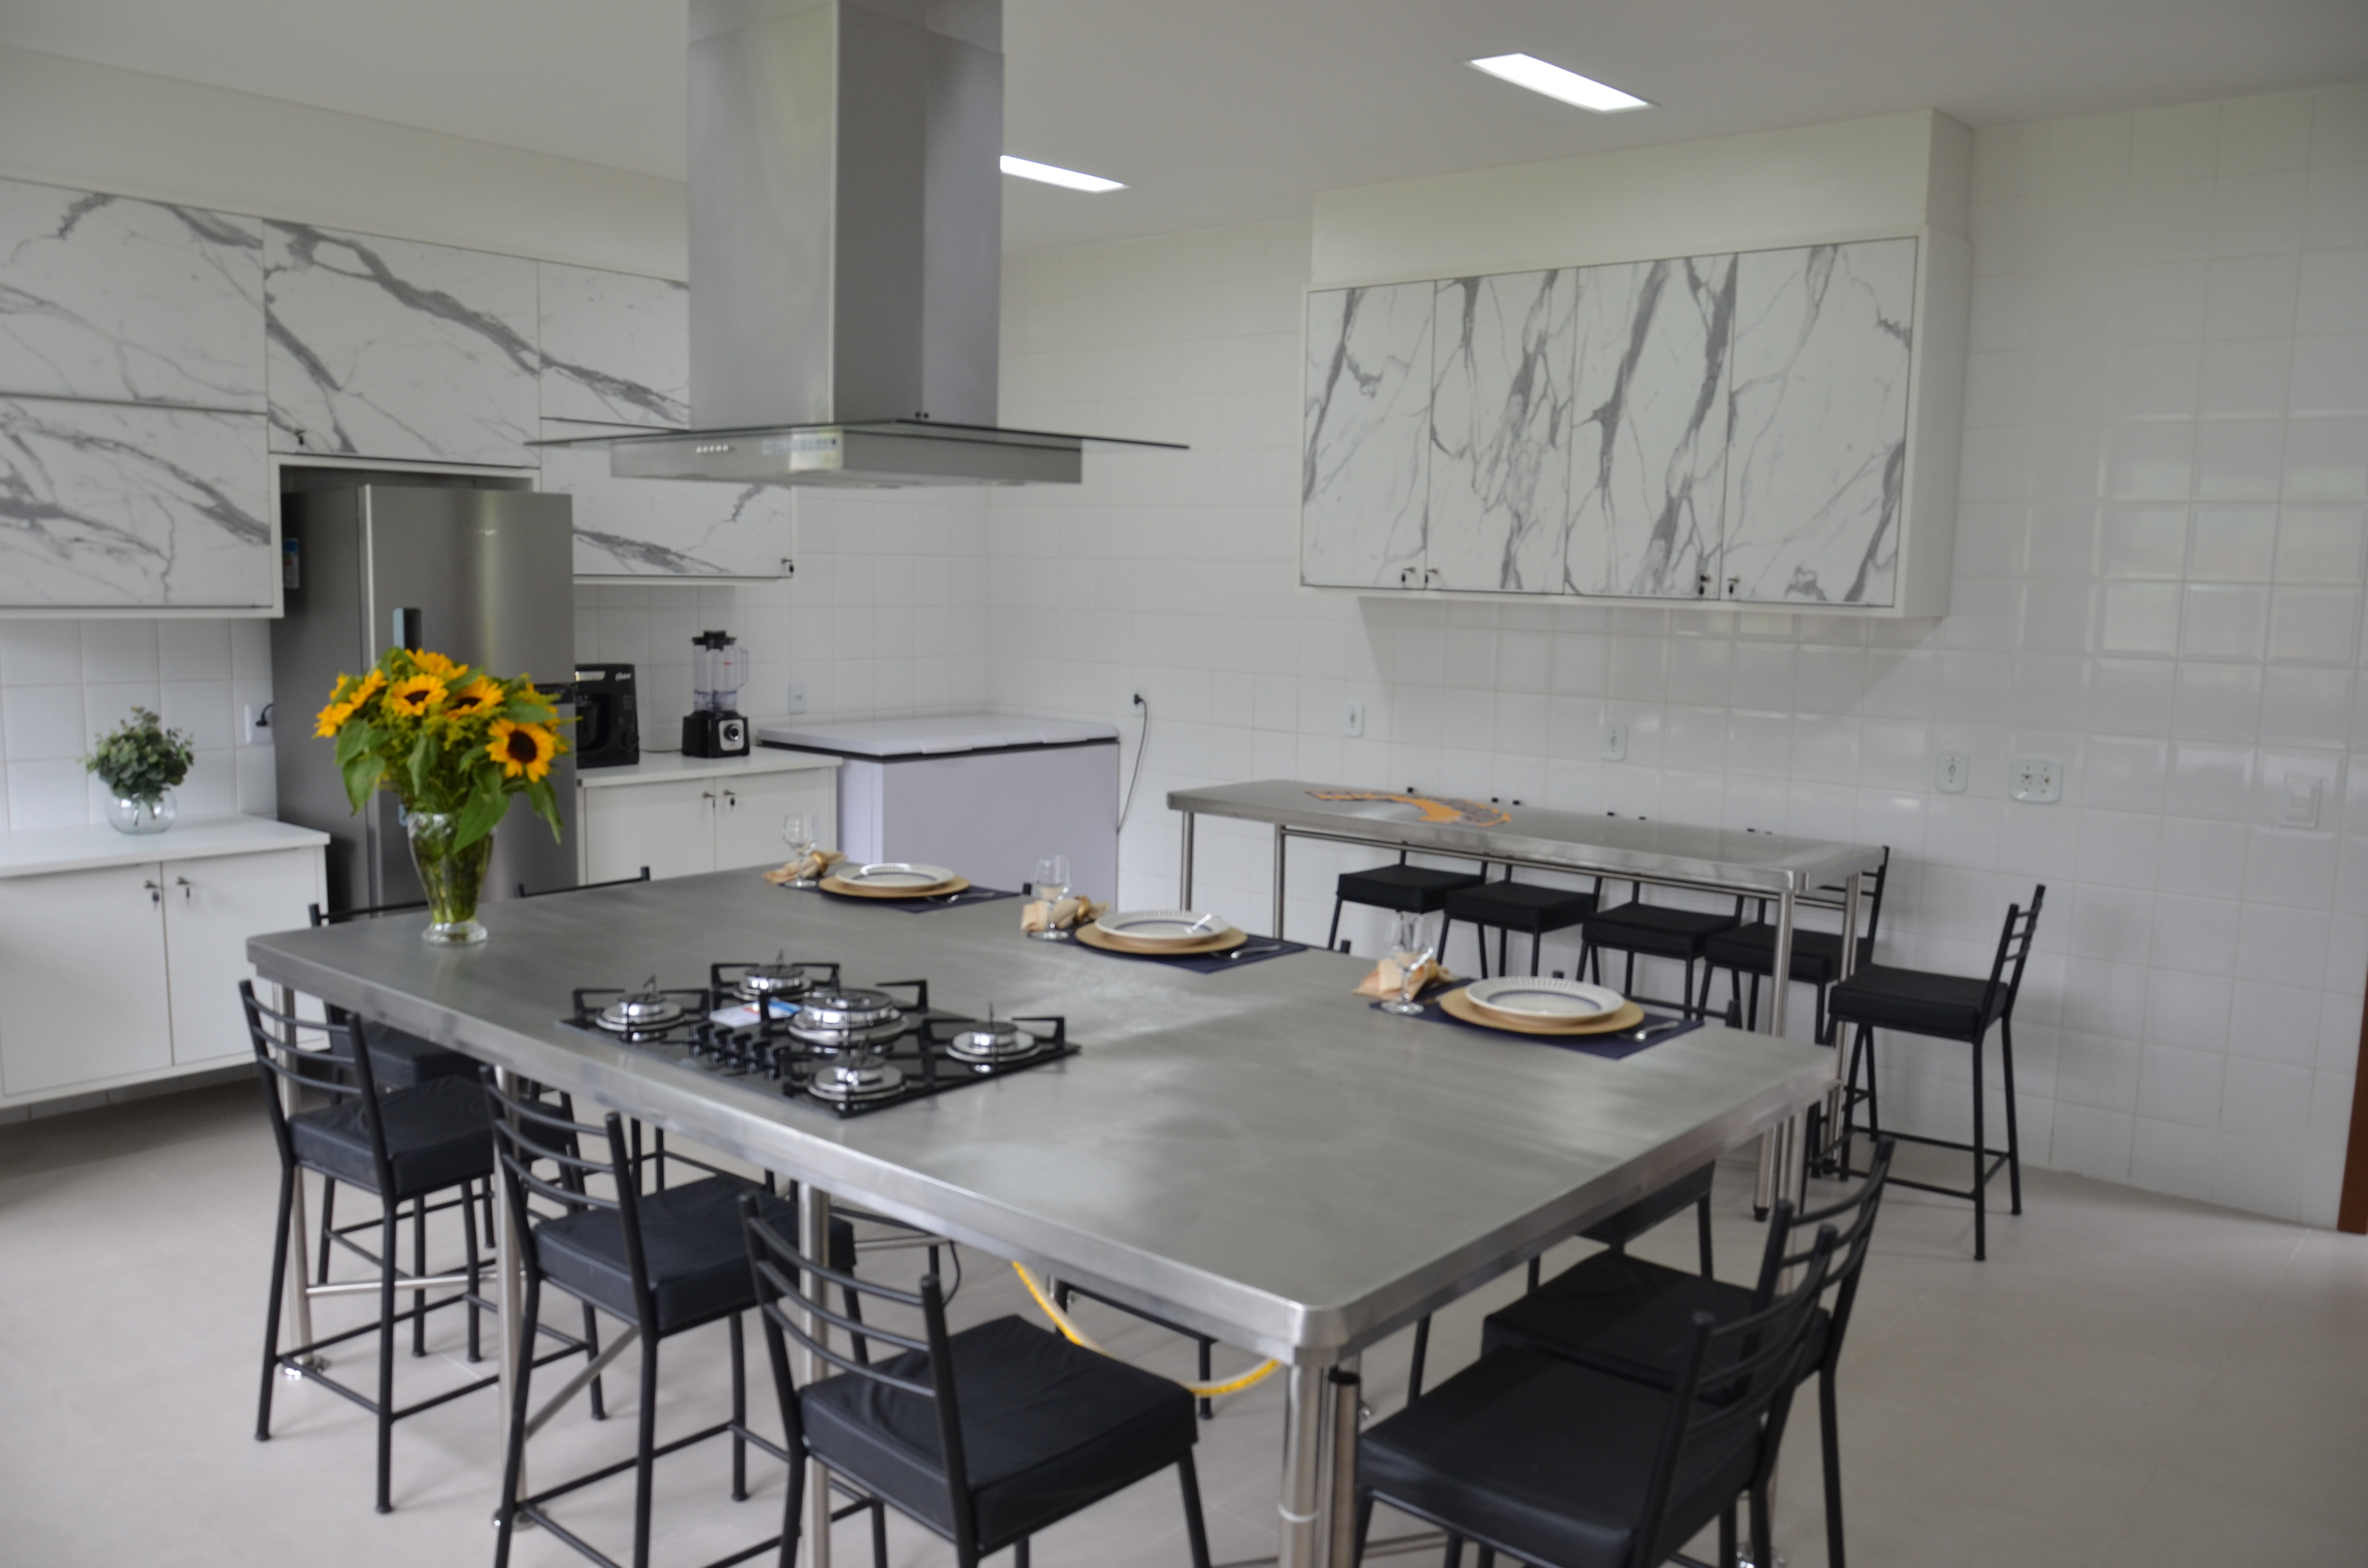 Cozinha-Escola é inaugurada pelo DRAMN Brasília e Com7ºDN